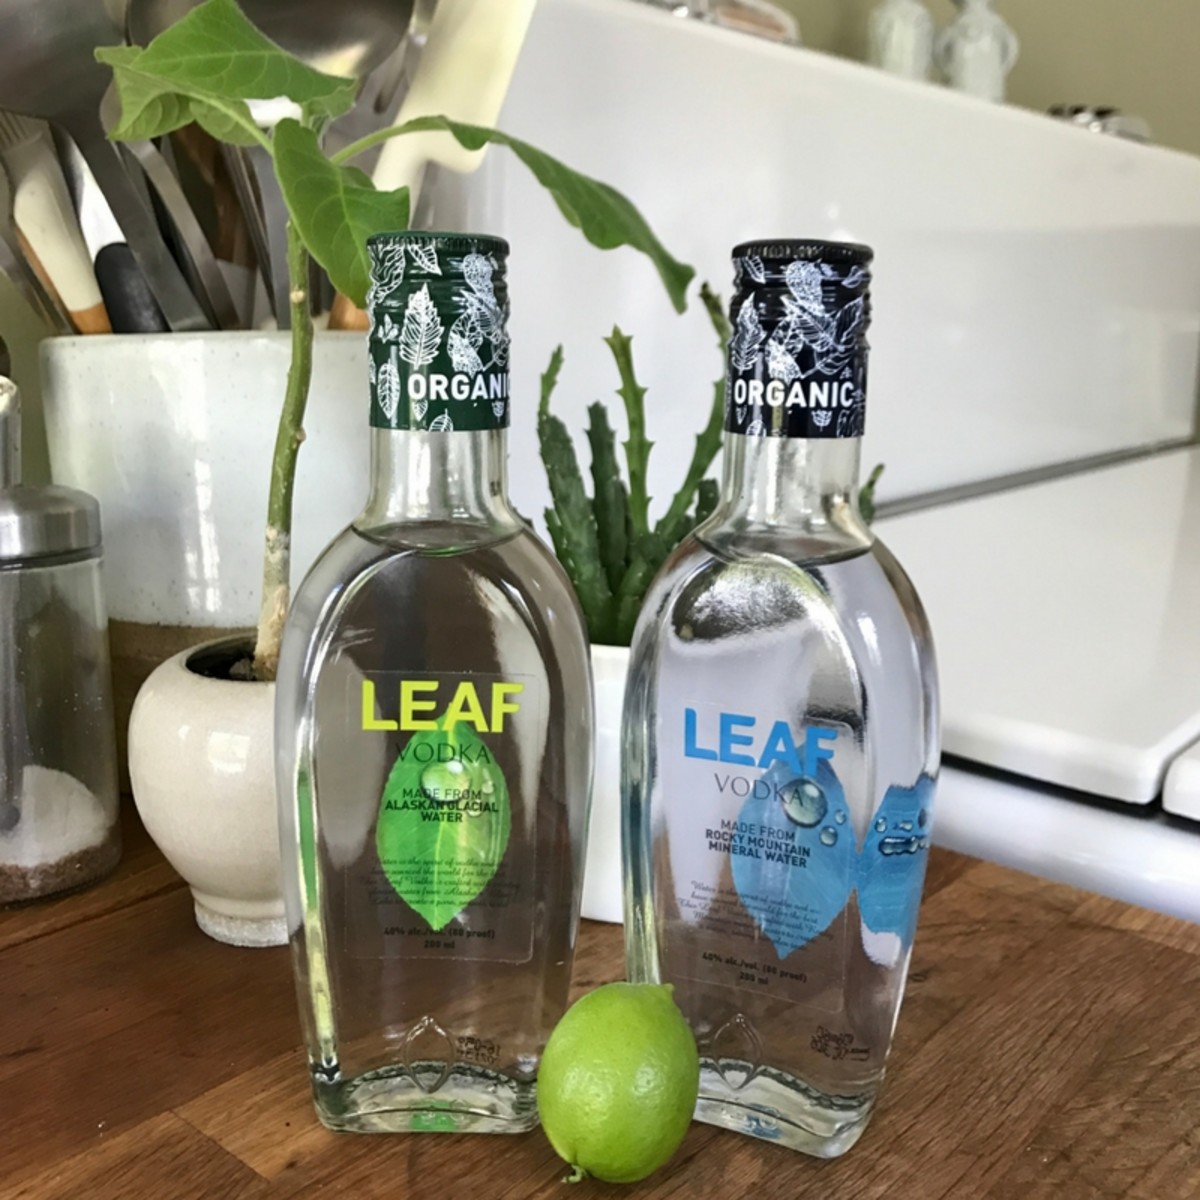 LEAF Vodka